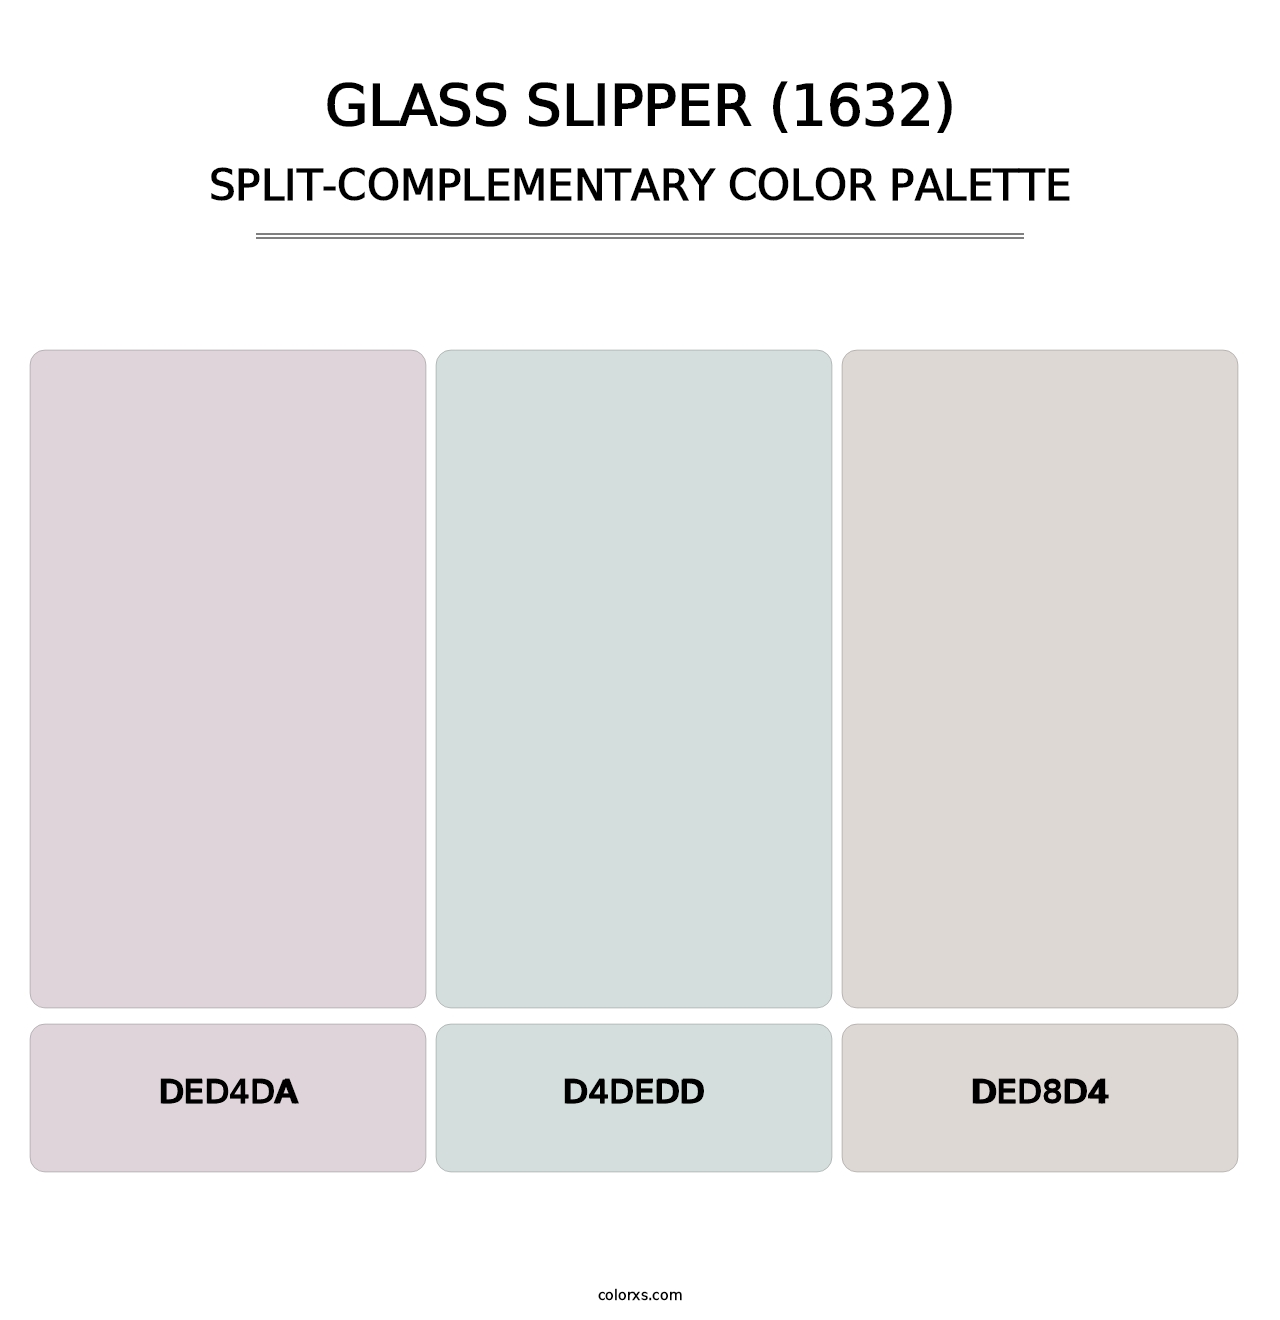 Glass Slipper (1632) - Split-Complementary Color Palette